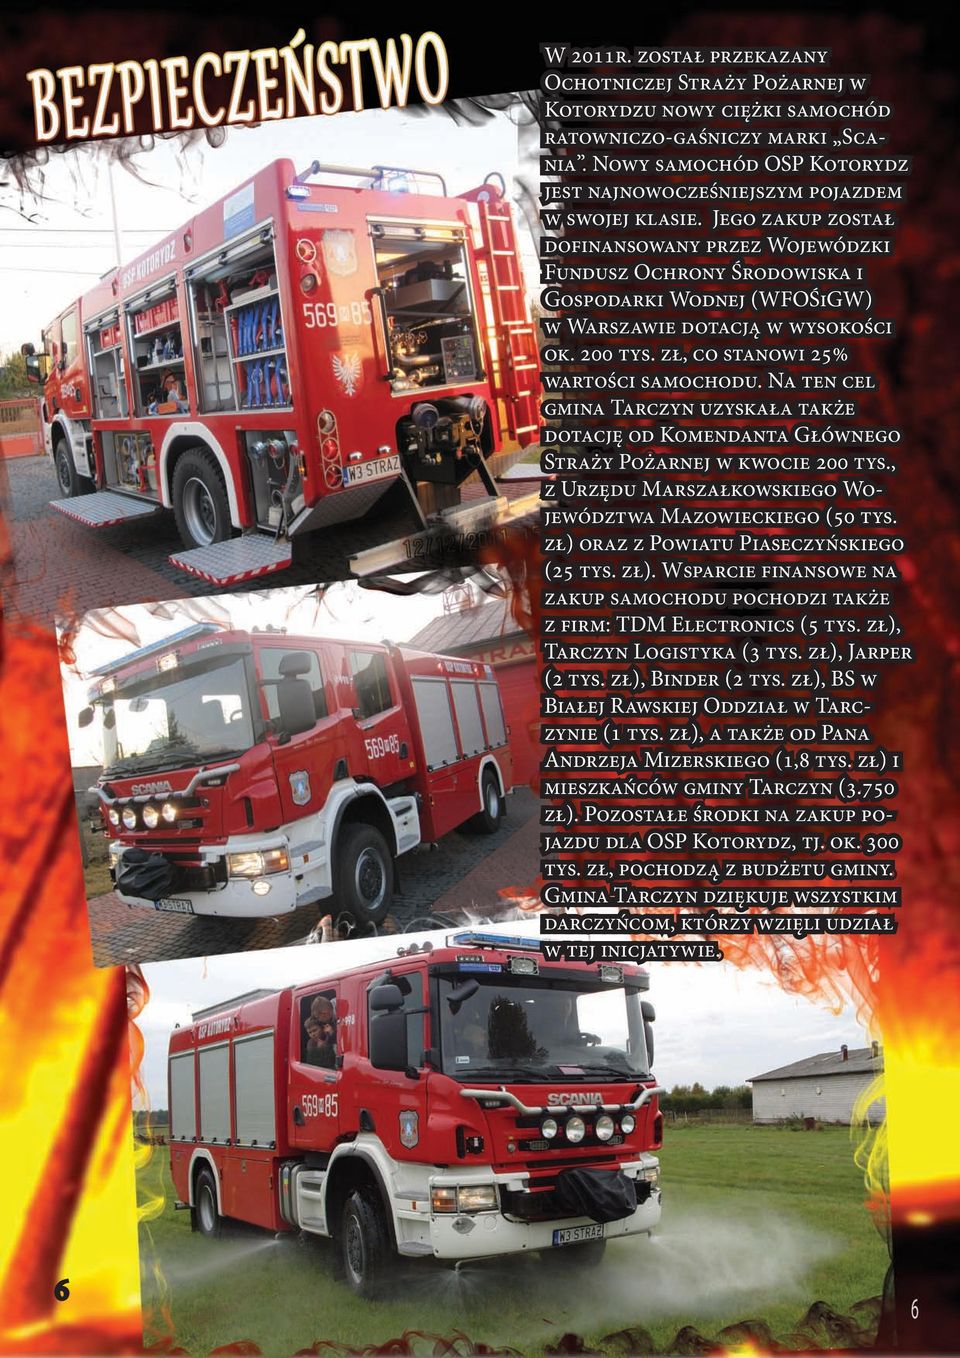 Na ten cel gmina Tarczyn uzyskała także dotację od Komendanta Głównego Straży Pożarnej w kwocie 200 tys., z Urzędu Marszałkowskiego Województwa Mazowieckiego (50 tys.